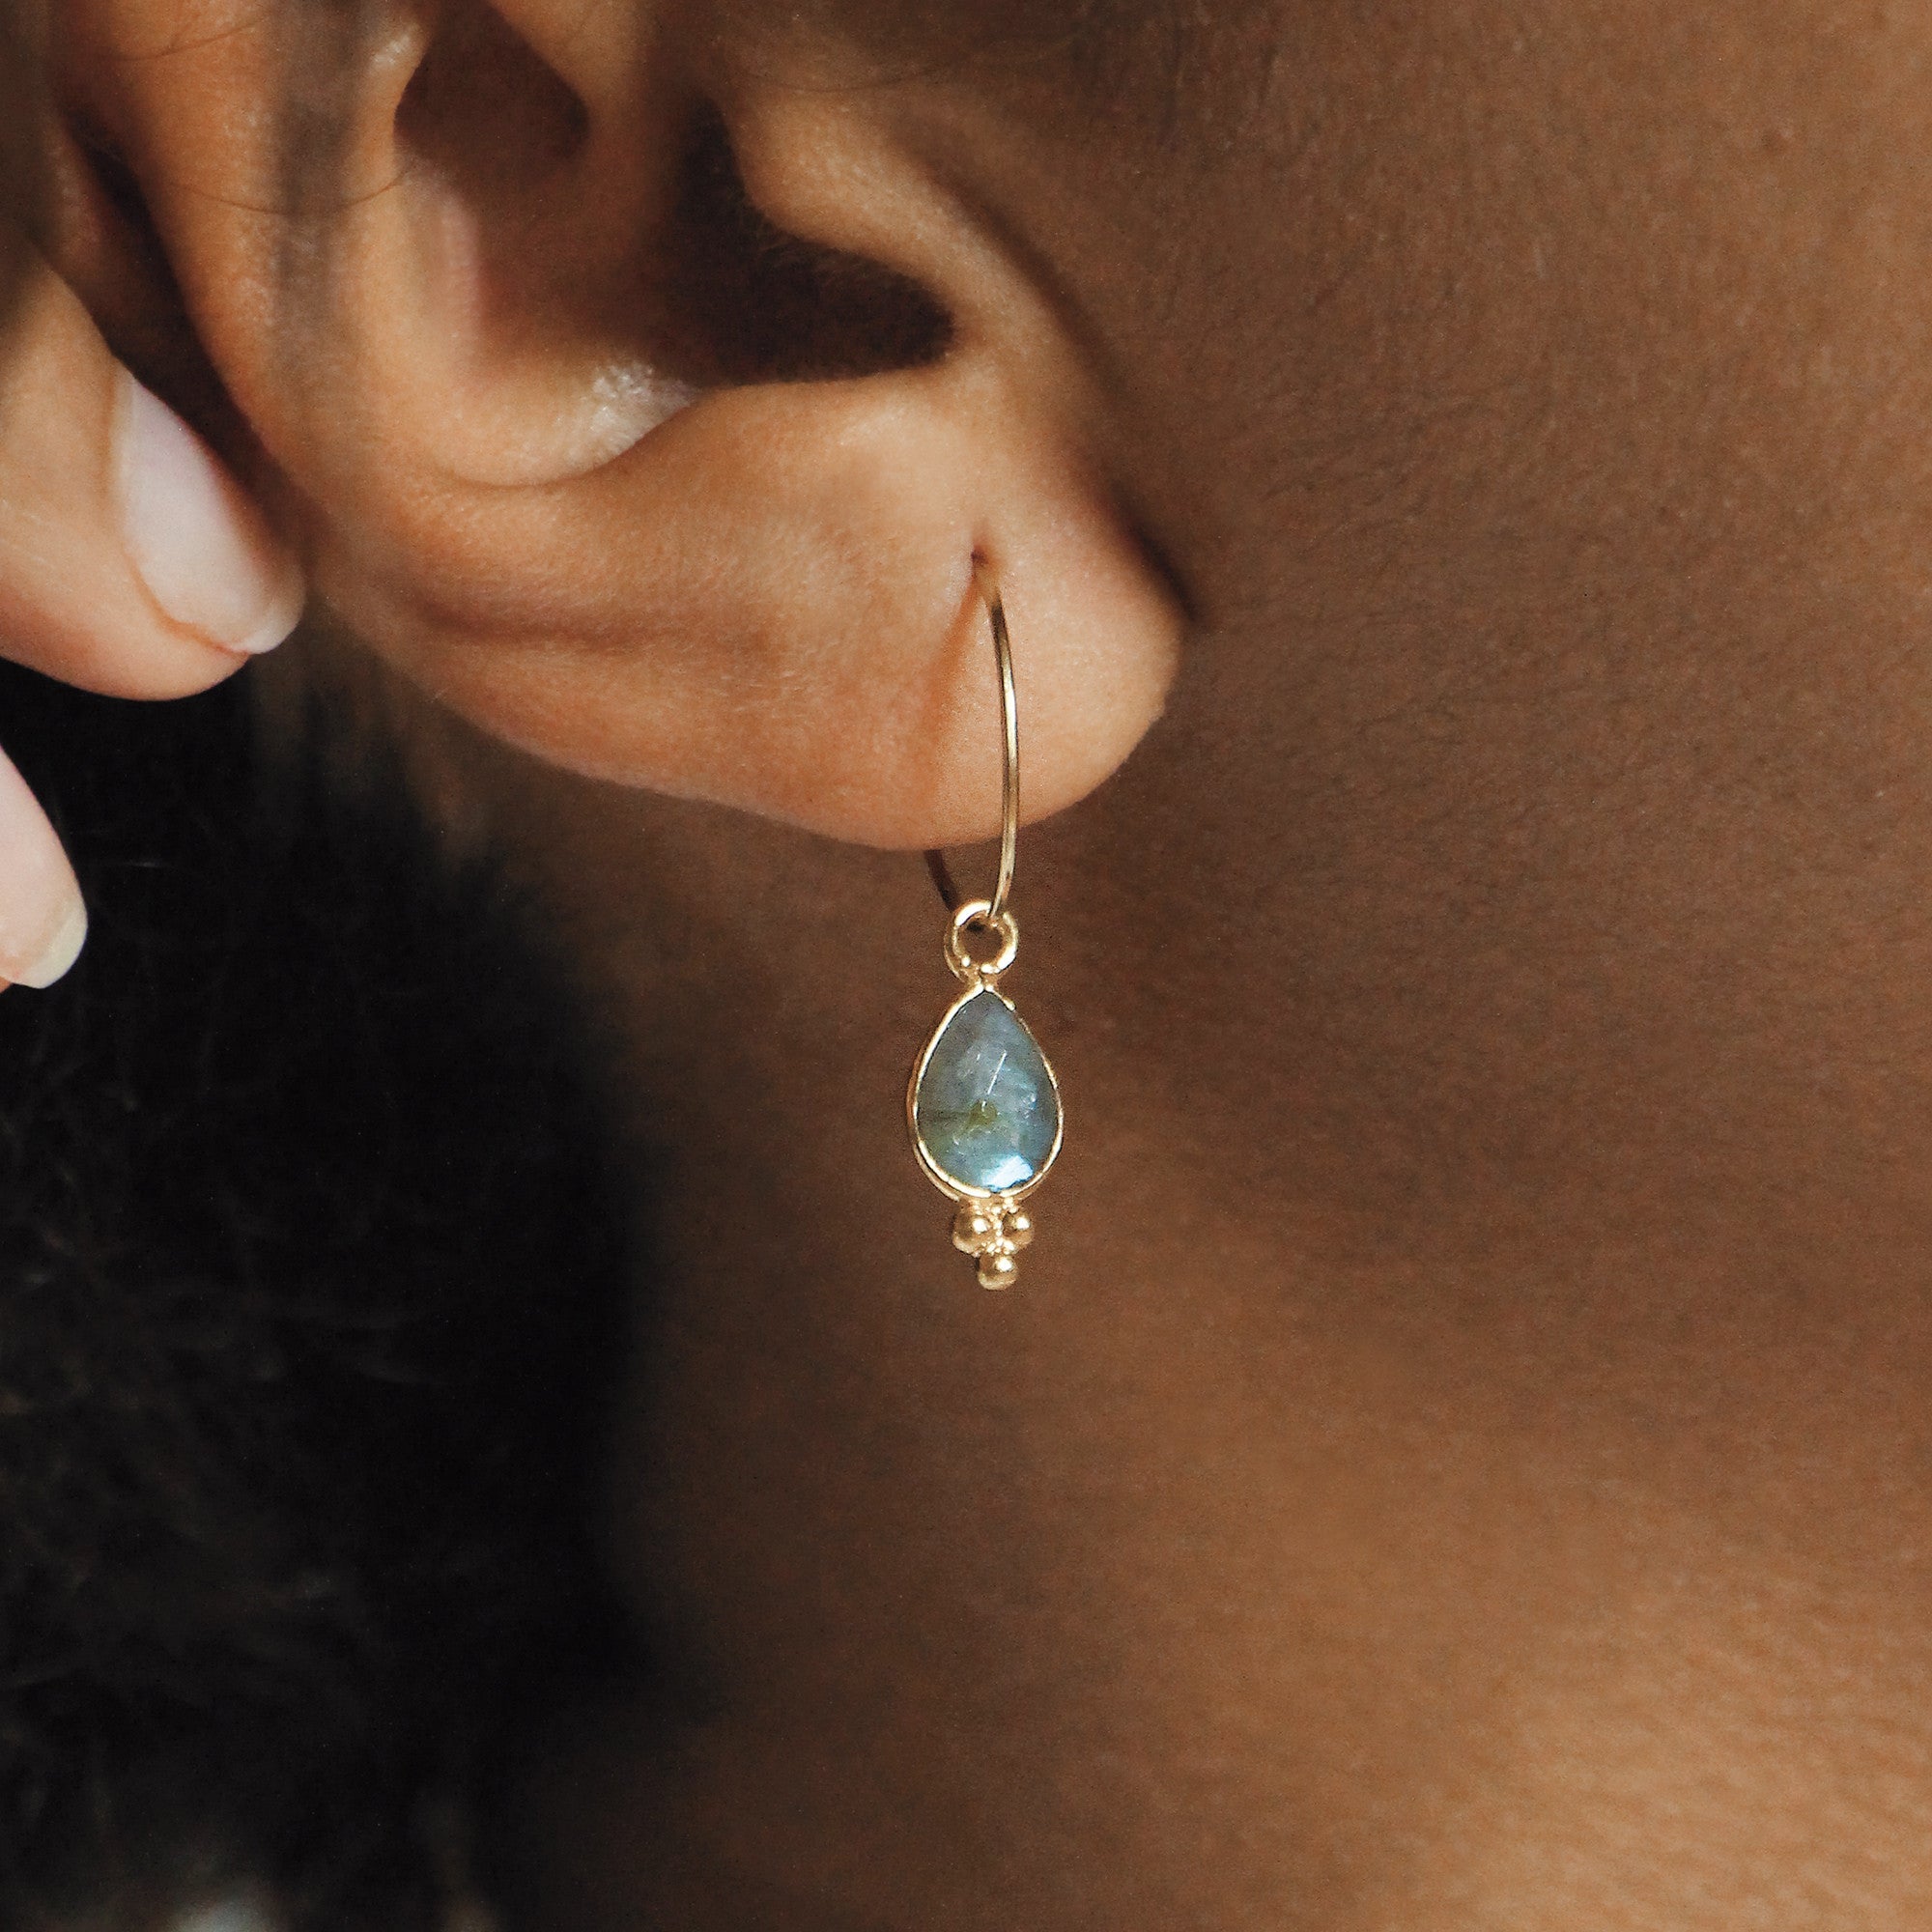 Delia earrings